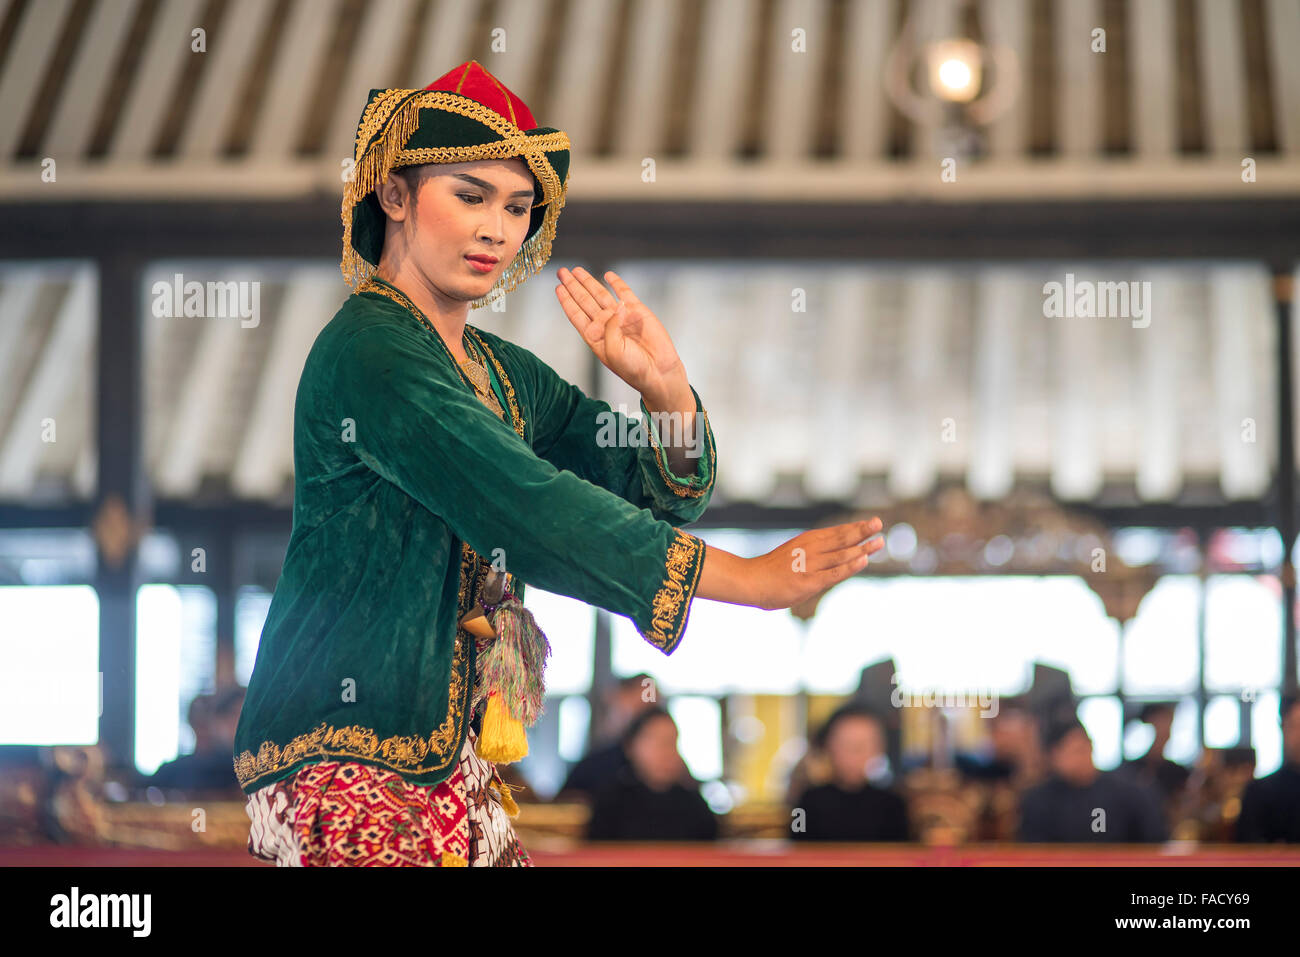 Durchführung einer traditionellen javanischen Tänzer tanzen im The Sultan Palace / Kraton, Yogyakarta, Java, Indonesien, Asien Stockfoto